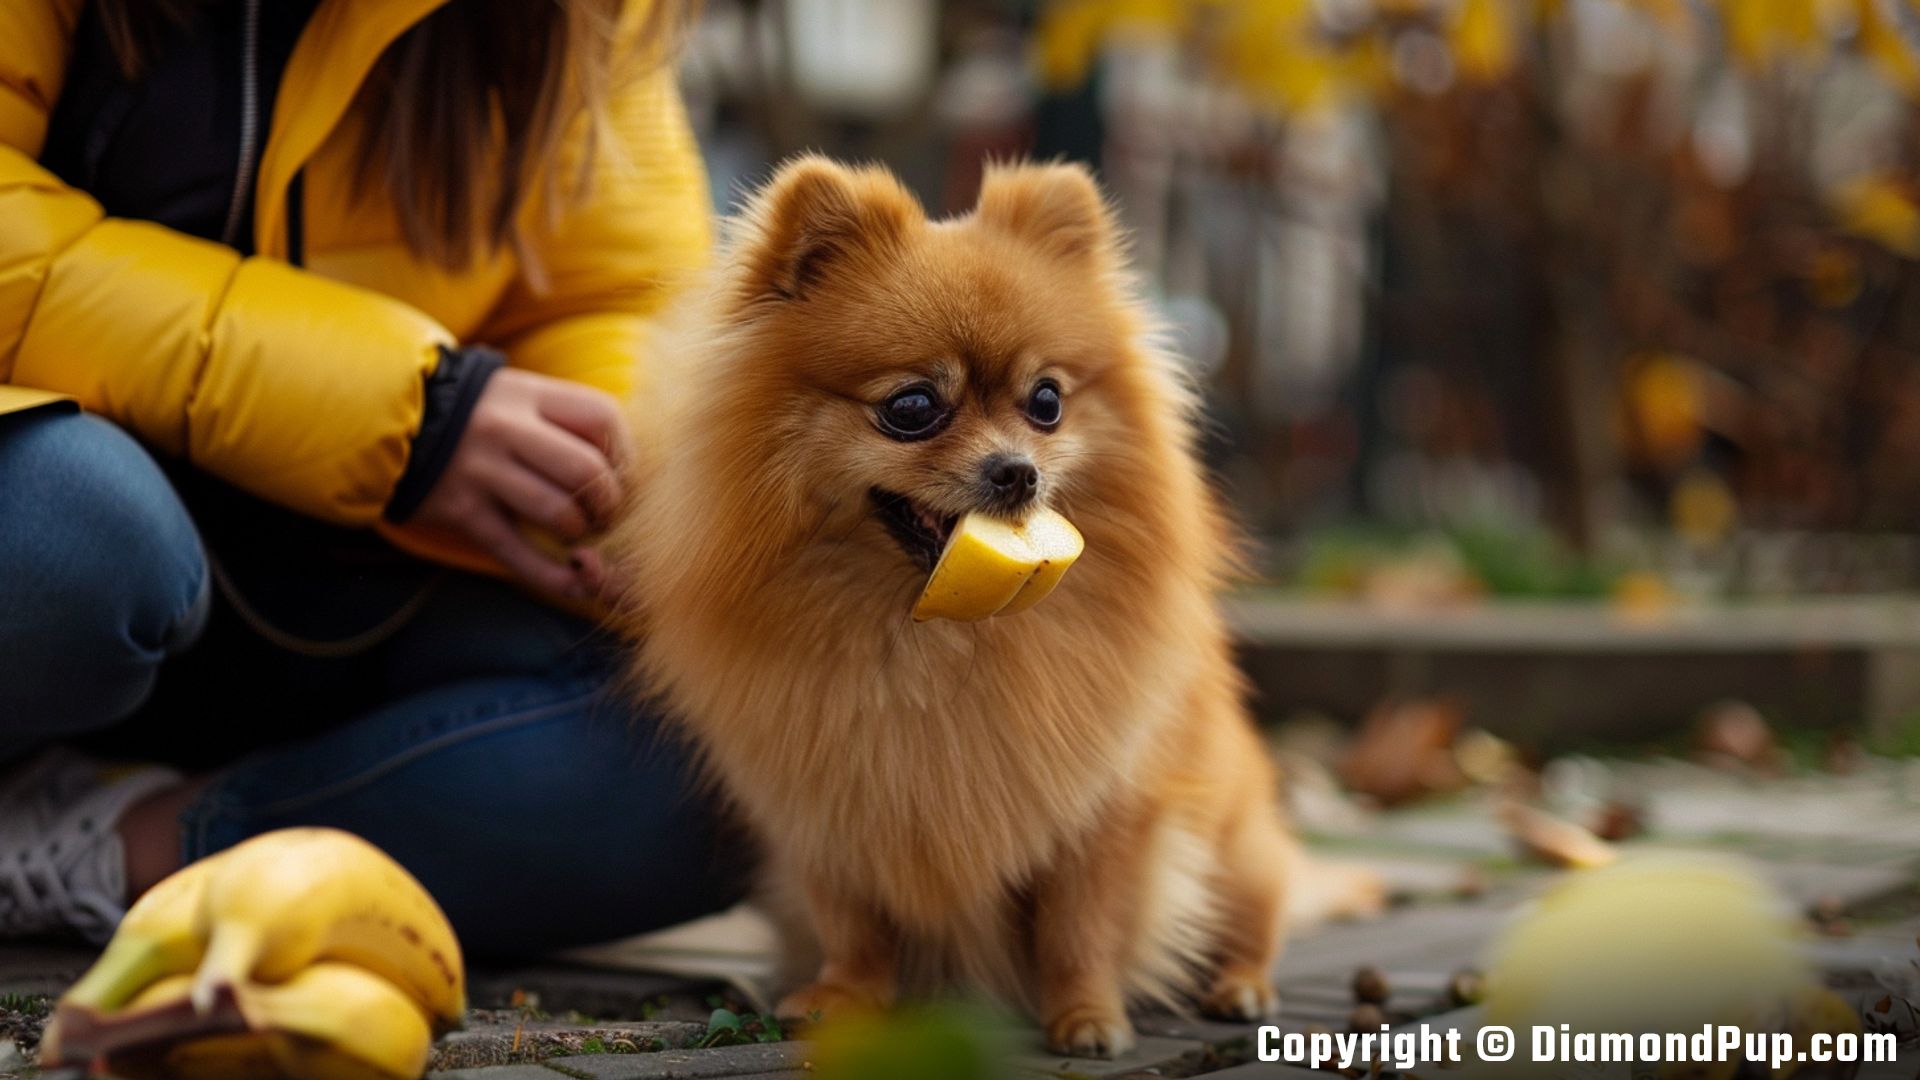 Photograph of a Happy Pomeranian Snacking on Banana